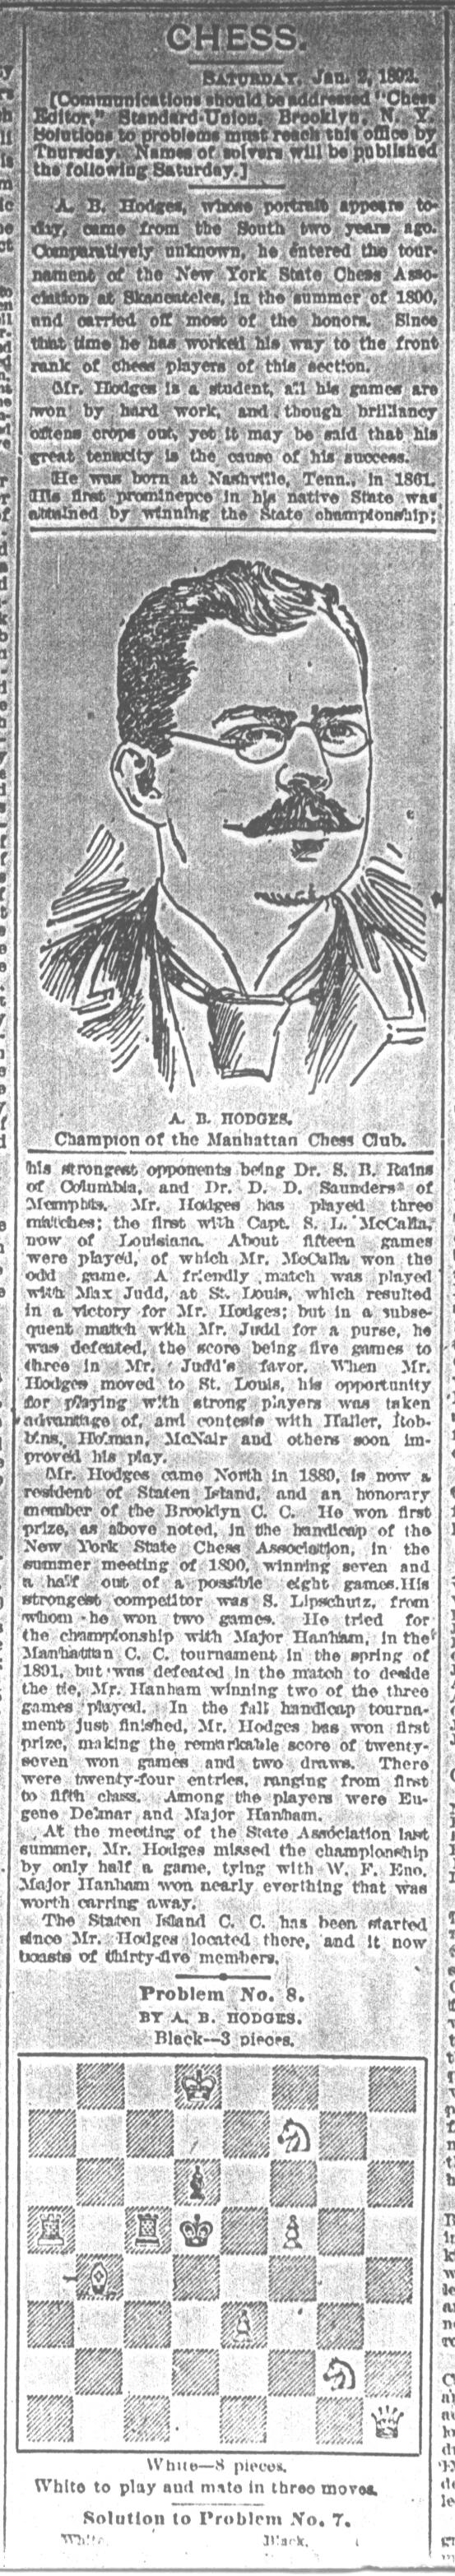 1892.01.02-01 Brooklyn Daily Standard-Union.jpg